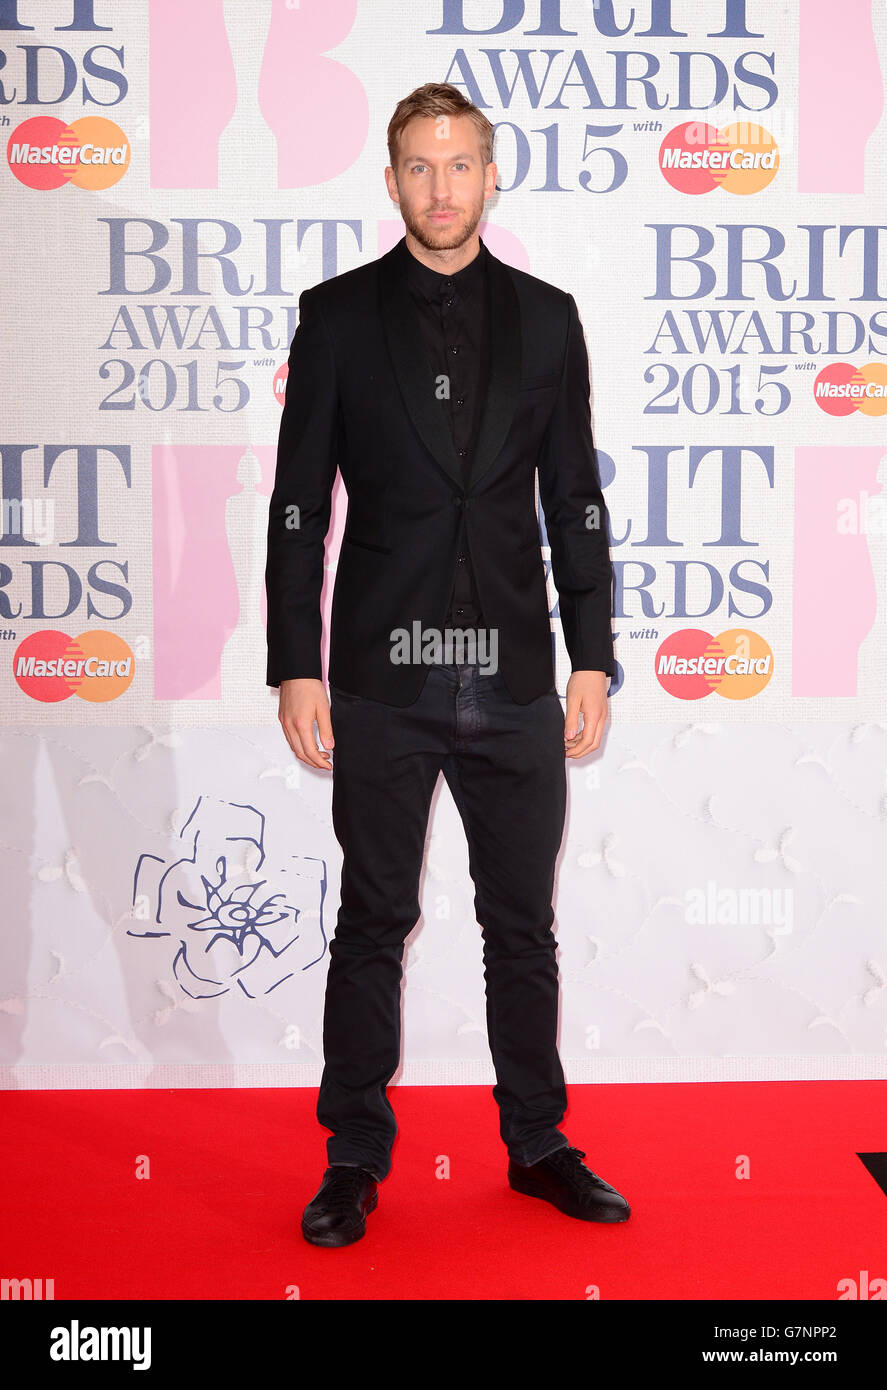 Calvin Harris arrive pour les Brit Awards 2015 à l'O2 Arena, Londres. APPUYEZ SUR ASSOCIATION photo. Date de la photo: Mercredi 25 février 2015. Voir l'histoire de PA SHOWBIZ Bits. Le crédit photo devrait se lire comme suit : Dominic Lipinski/PA Wire Banque D'Images